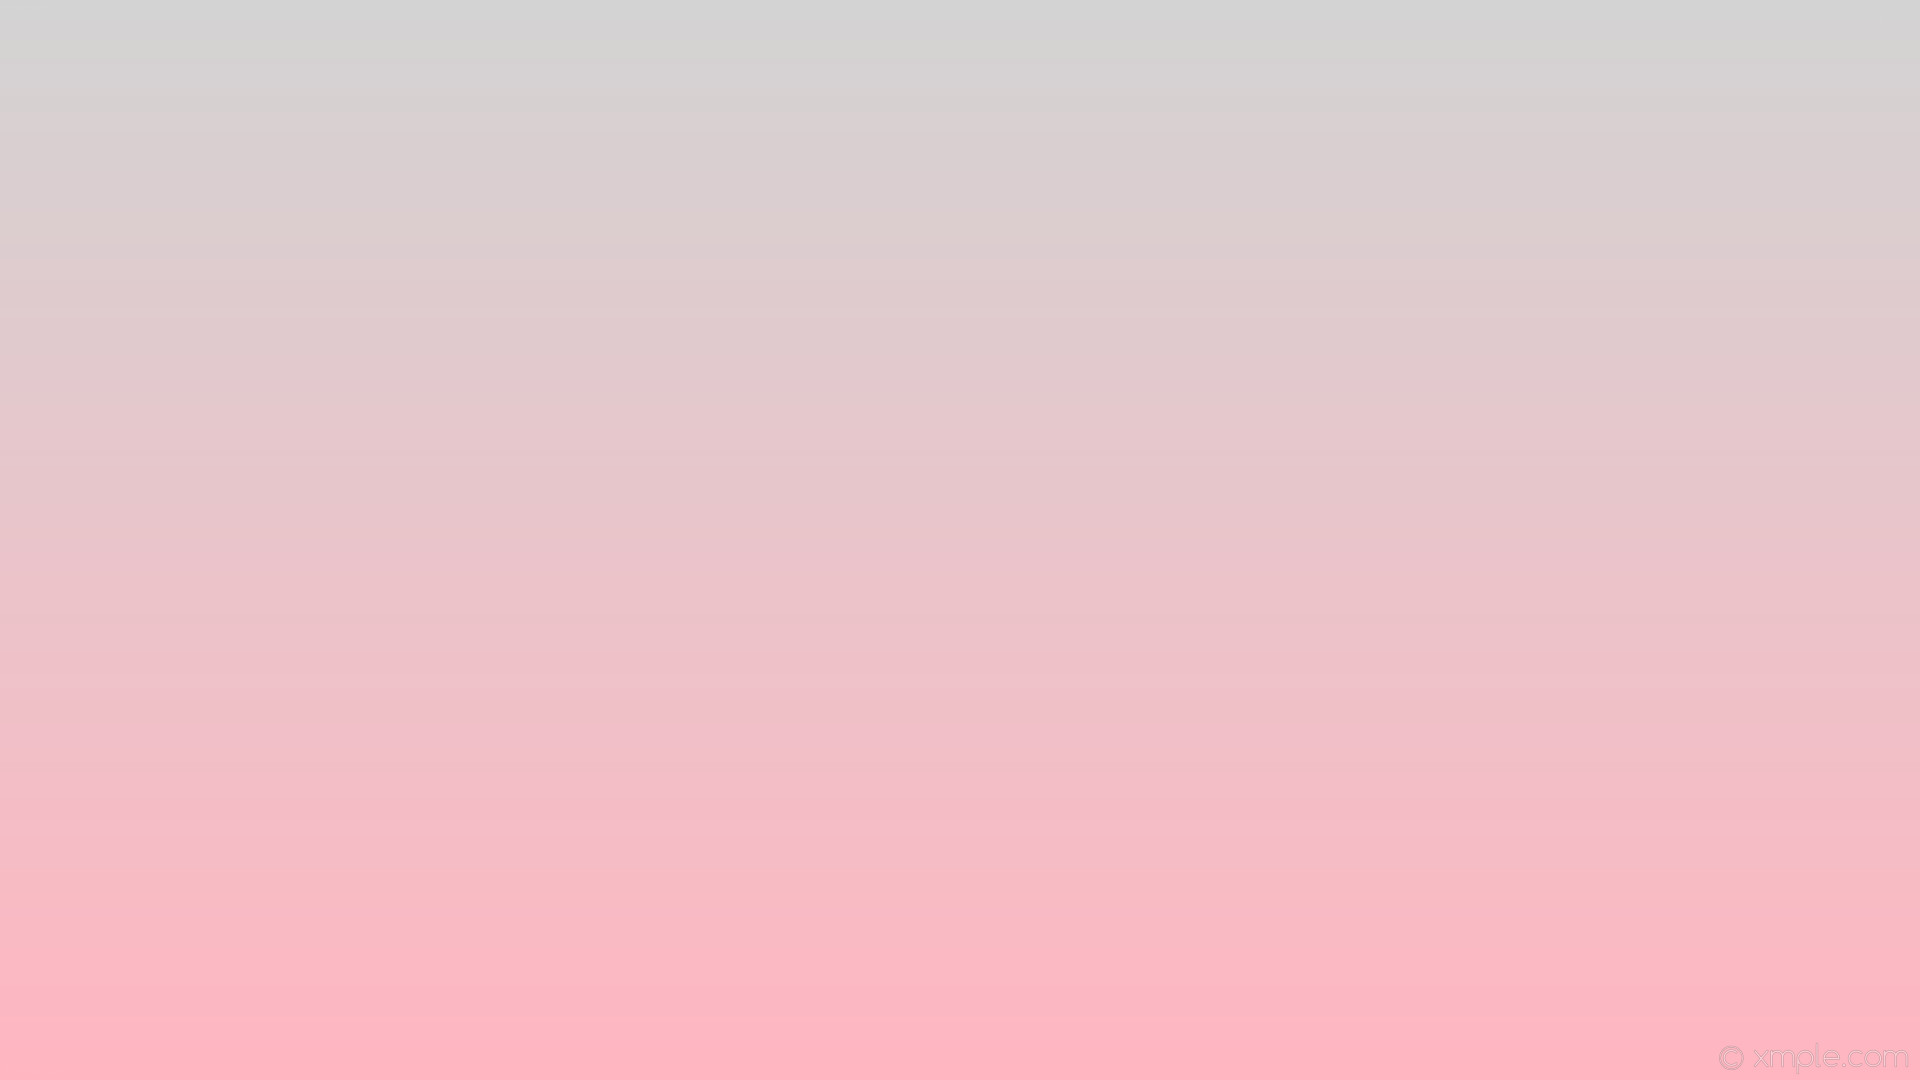 1920x1080 wallpaper grey pink gradient linear light pink light gray #ffb6c1 #d3d3d3  270Â°